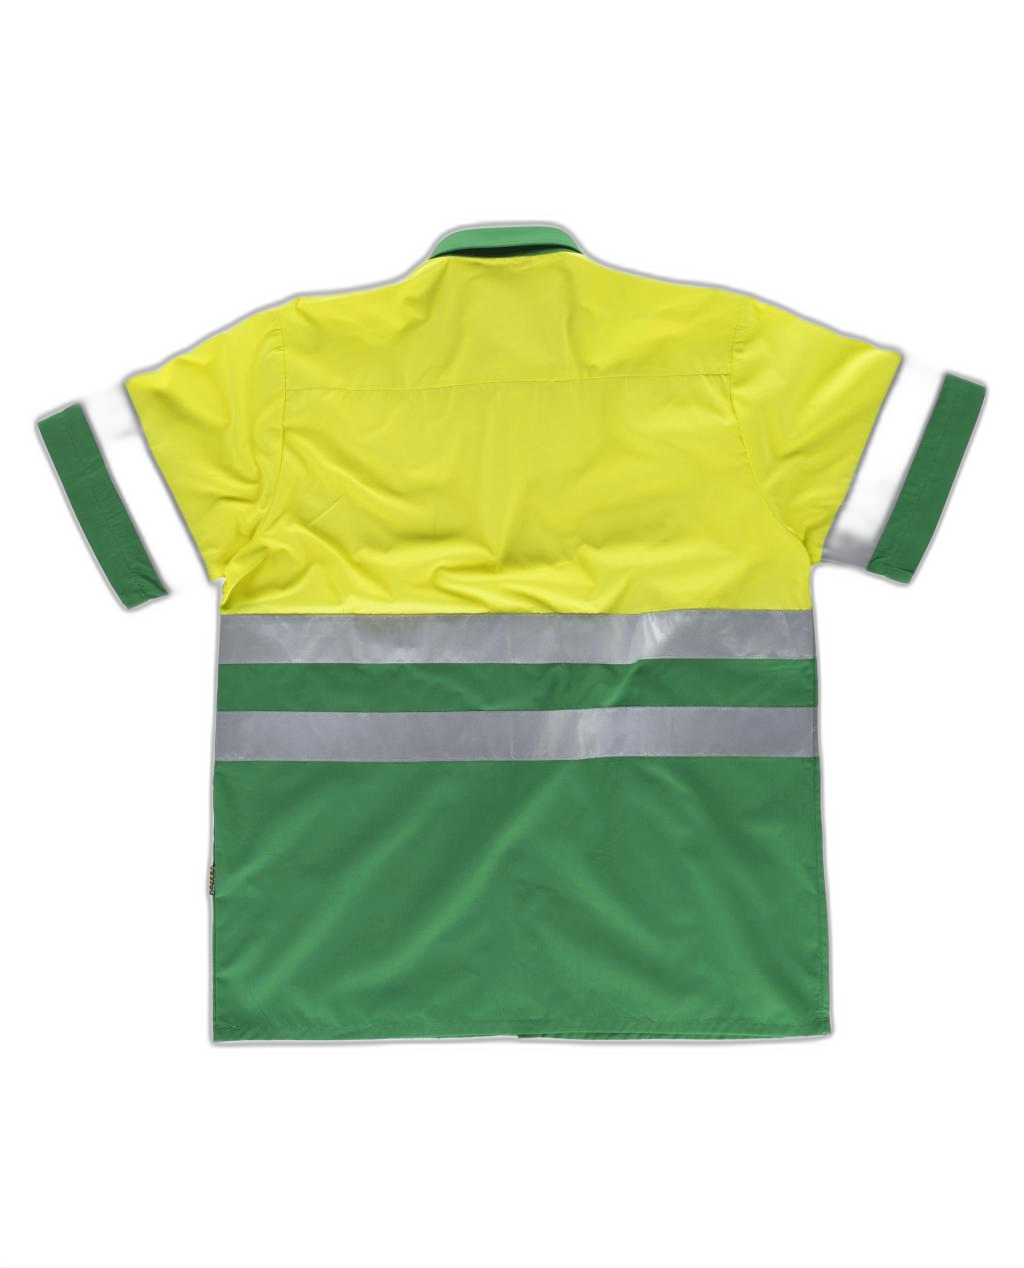 Camisa manga corta combinada con 2 bolsos de pecho y con cintas reflectantes WORKTEAM C3812